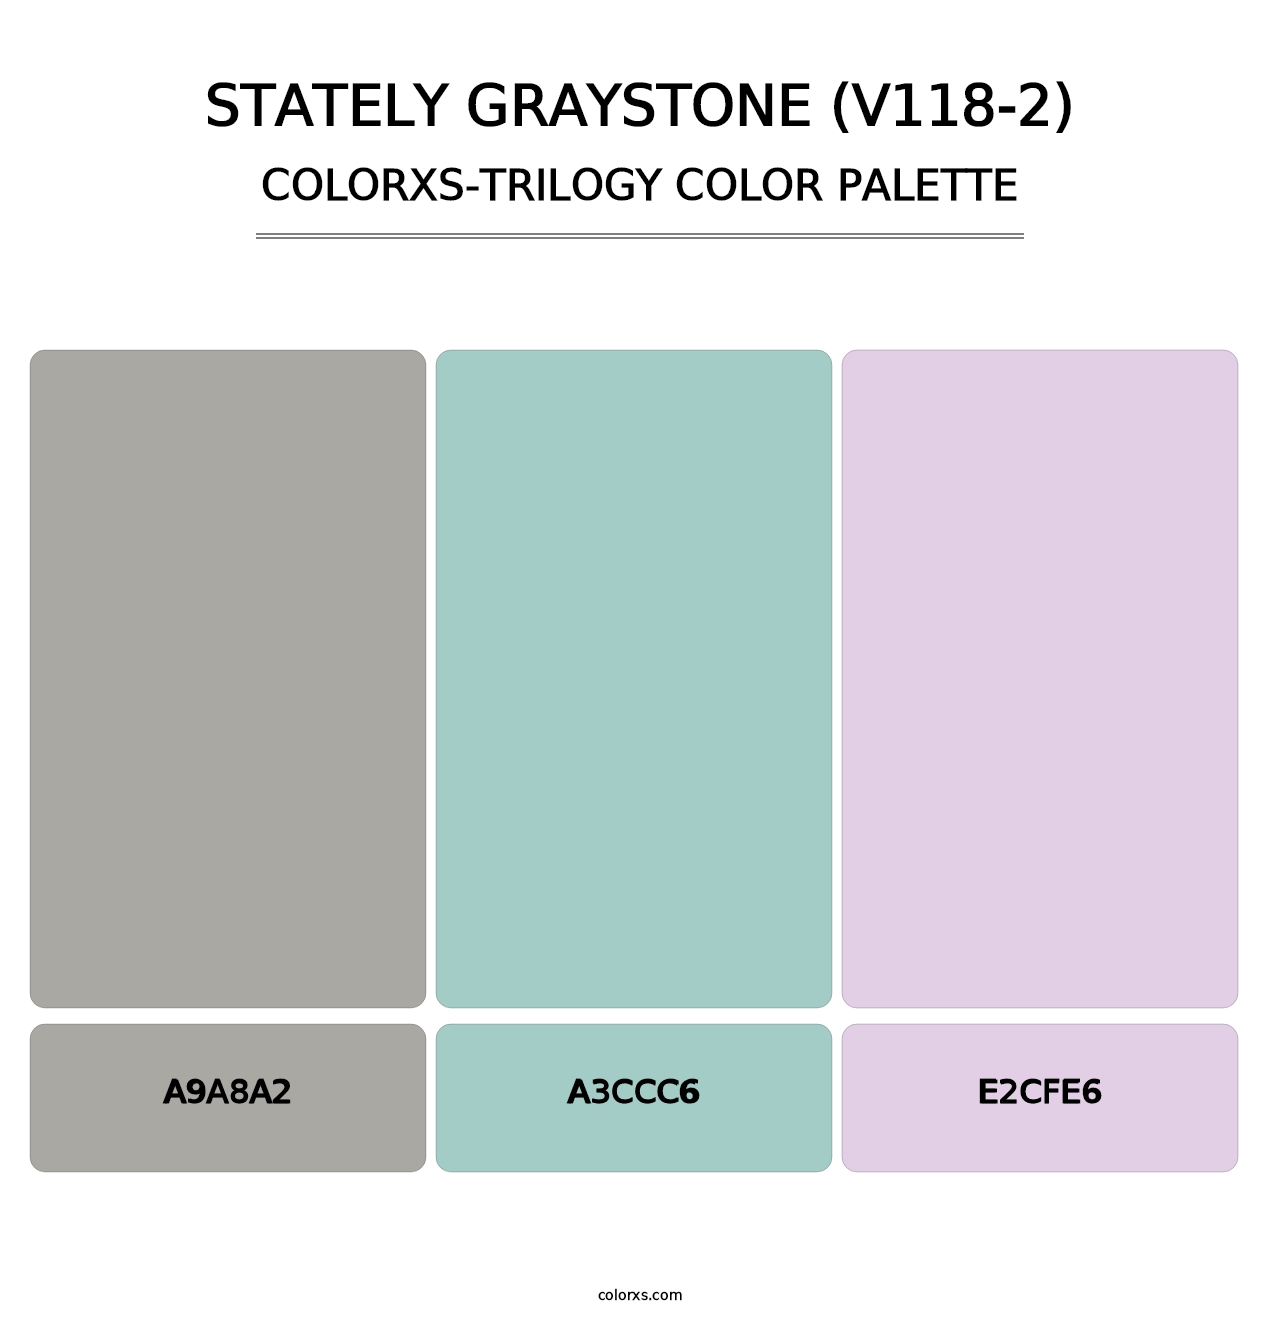 Stately Graystone (V118-2) - Colorxs Trilogy Palette